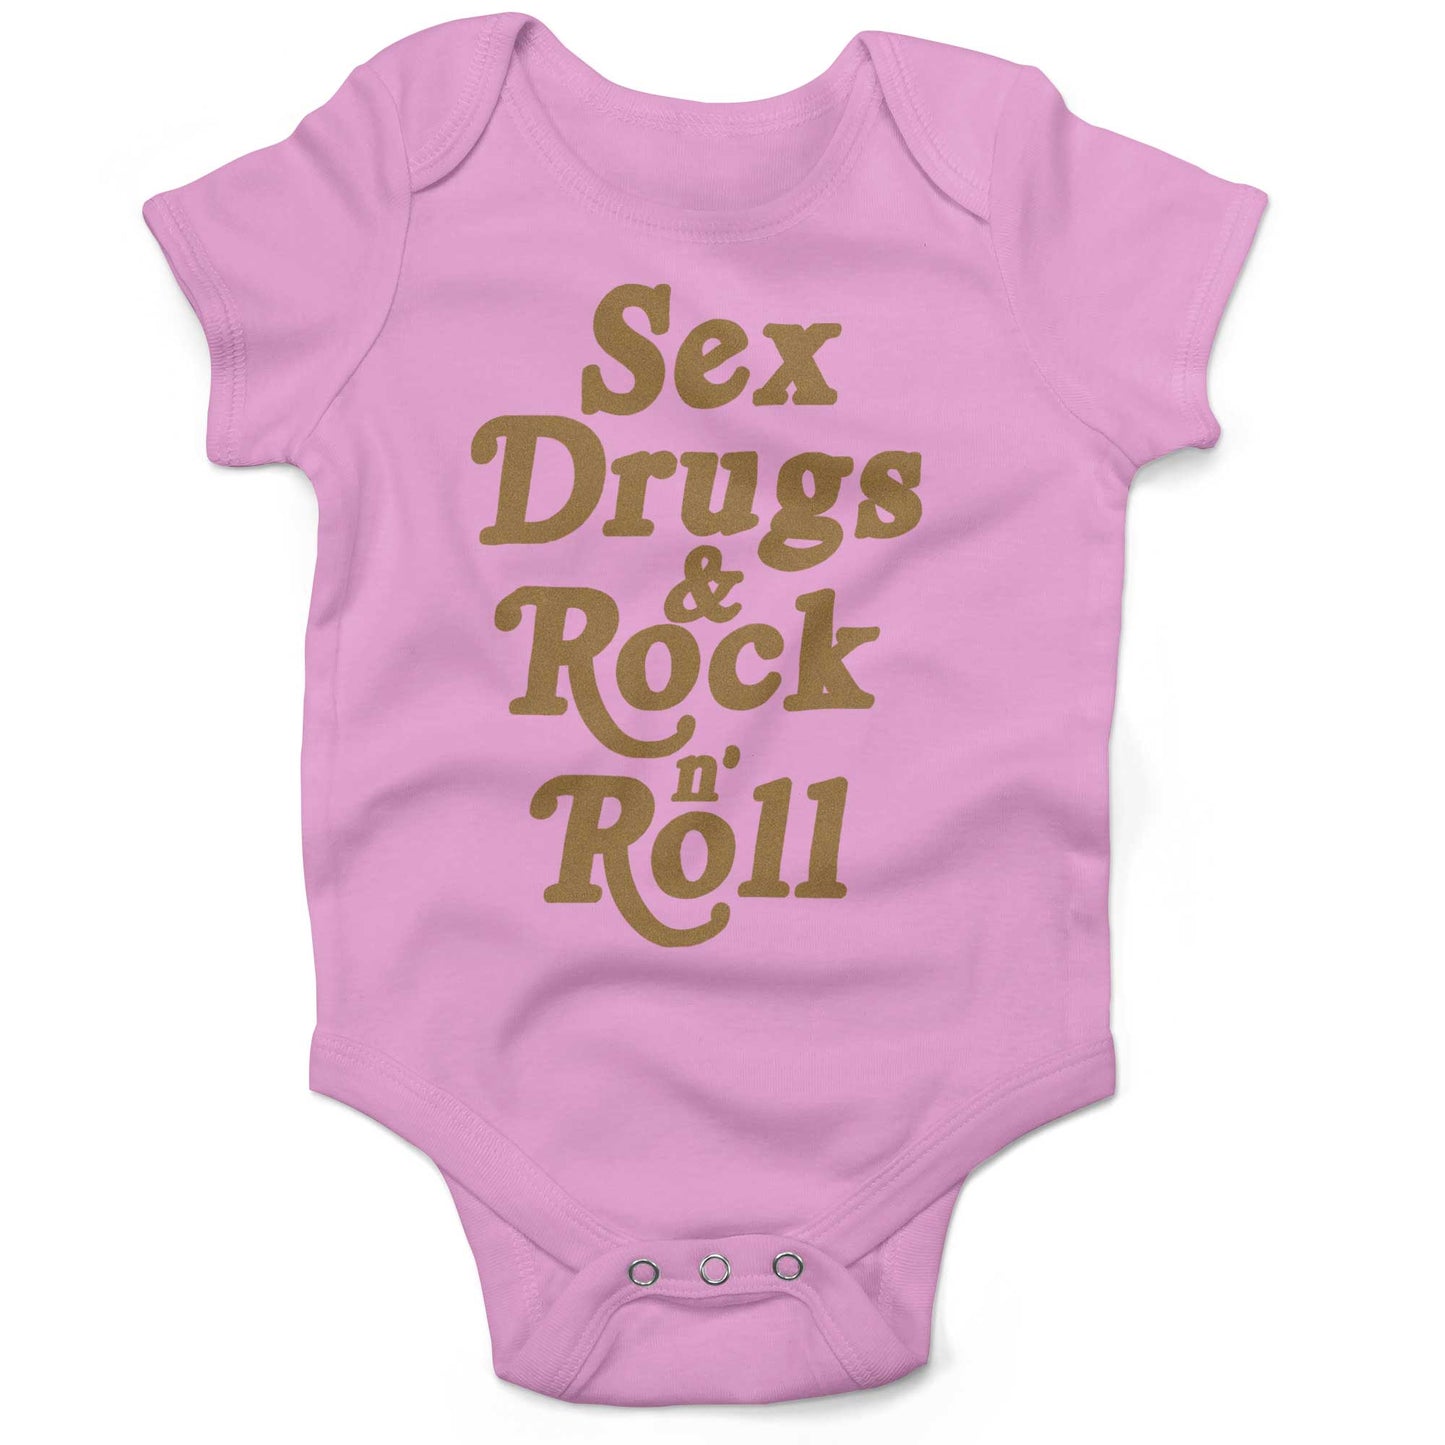 Sex, Drugs & Rock 'n Roll Infant Bodysuit or Raglan Baby Tee-Organic Pink-3-6 months